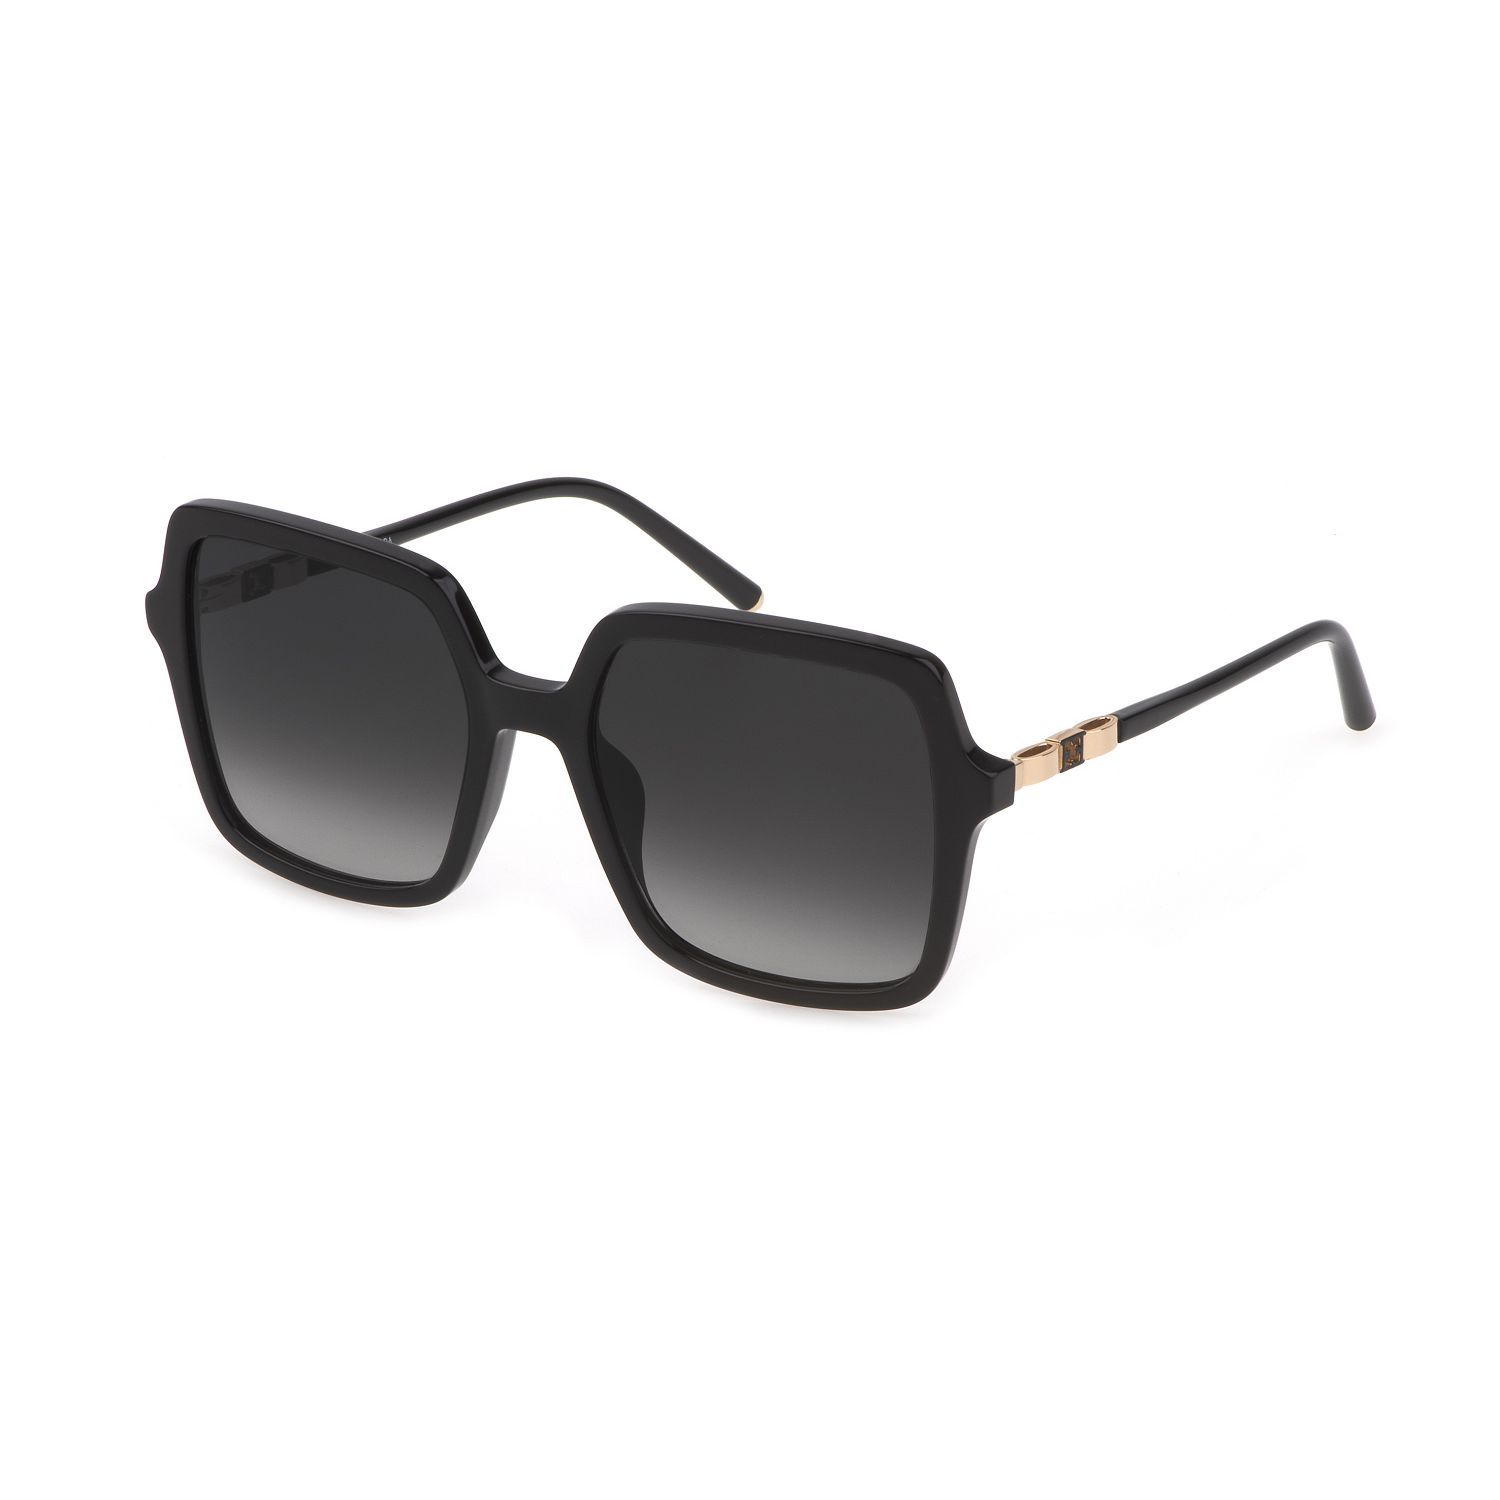 SESD46 Square Sunglasses 700 - size 55